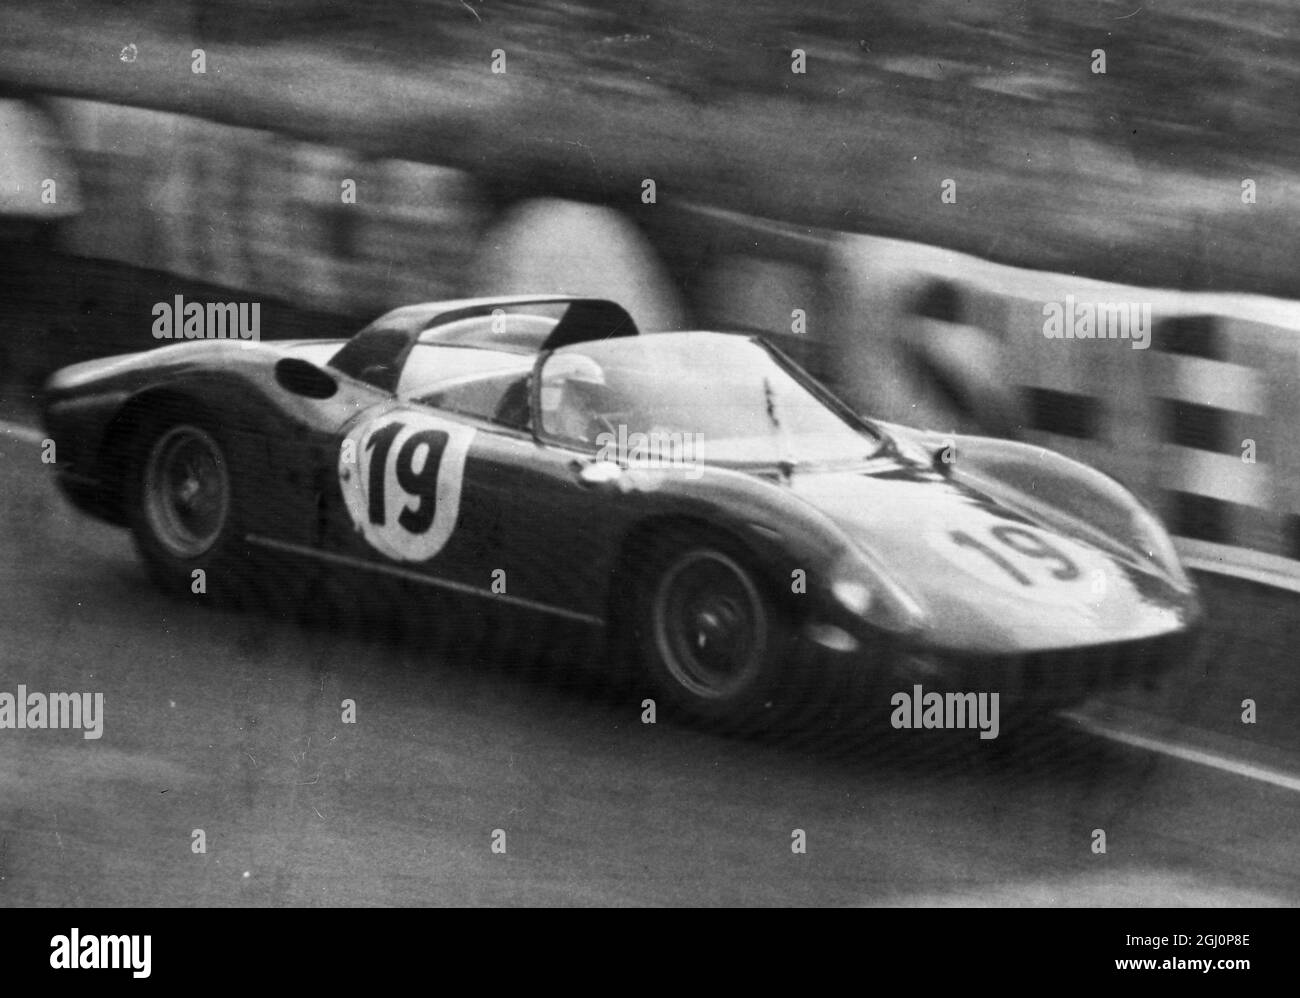 Surtees chauffe . Le Mans , France ; pilote britannique , John Surtees prend sa Ferrari italienne en vitesse sur la piste pendant les essais de la célèbre course d'endurance le Mans de 24 heures , qui commence plus tard . Surtees a déjà pointé la vitesse moyenne la plus rapide en pratique . 20 juin 1964 Banque D'Images